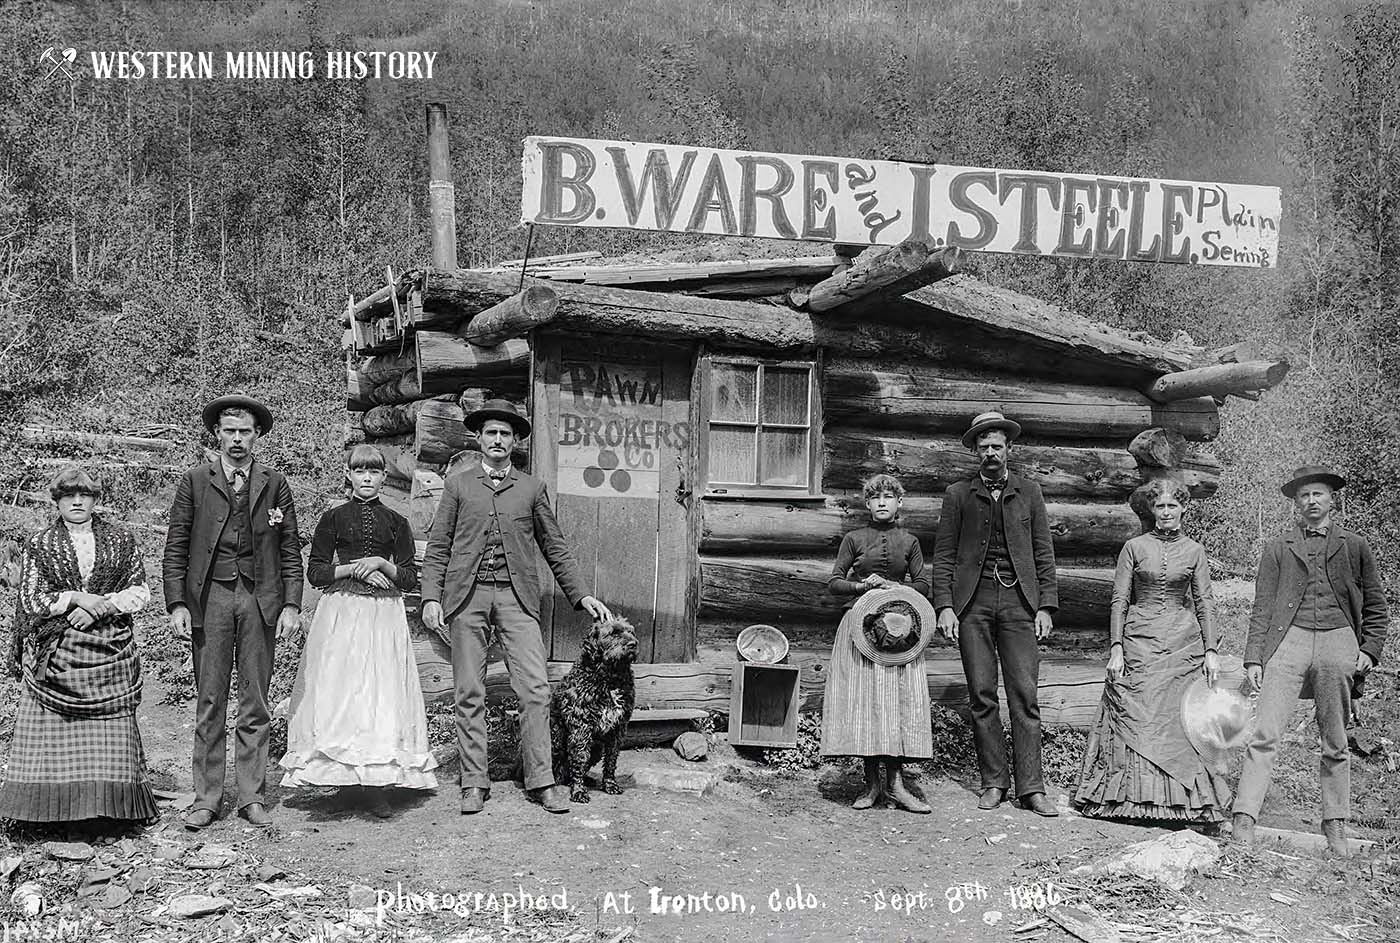 Pawn Brokers - Ironton Colorado 1886